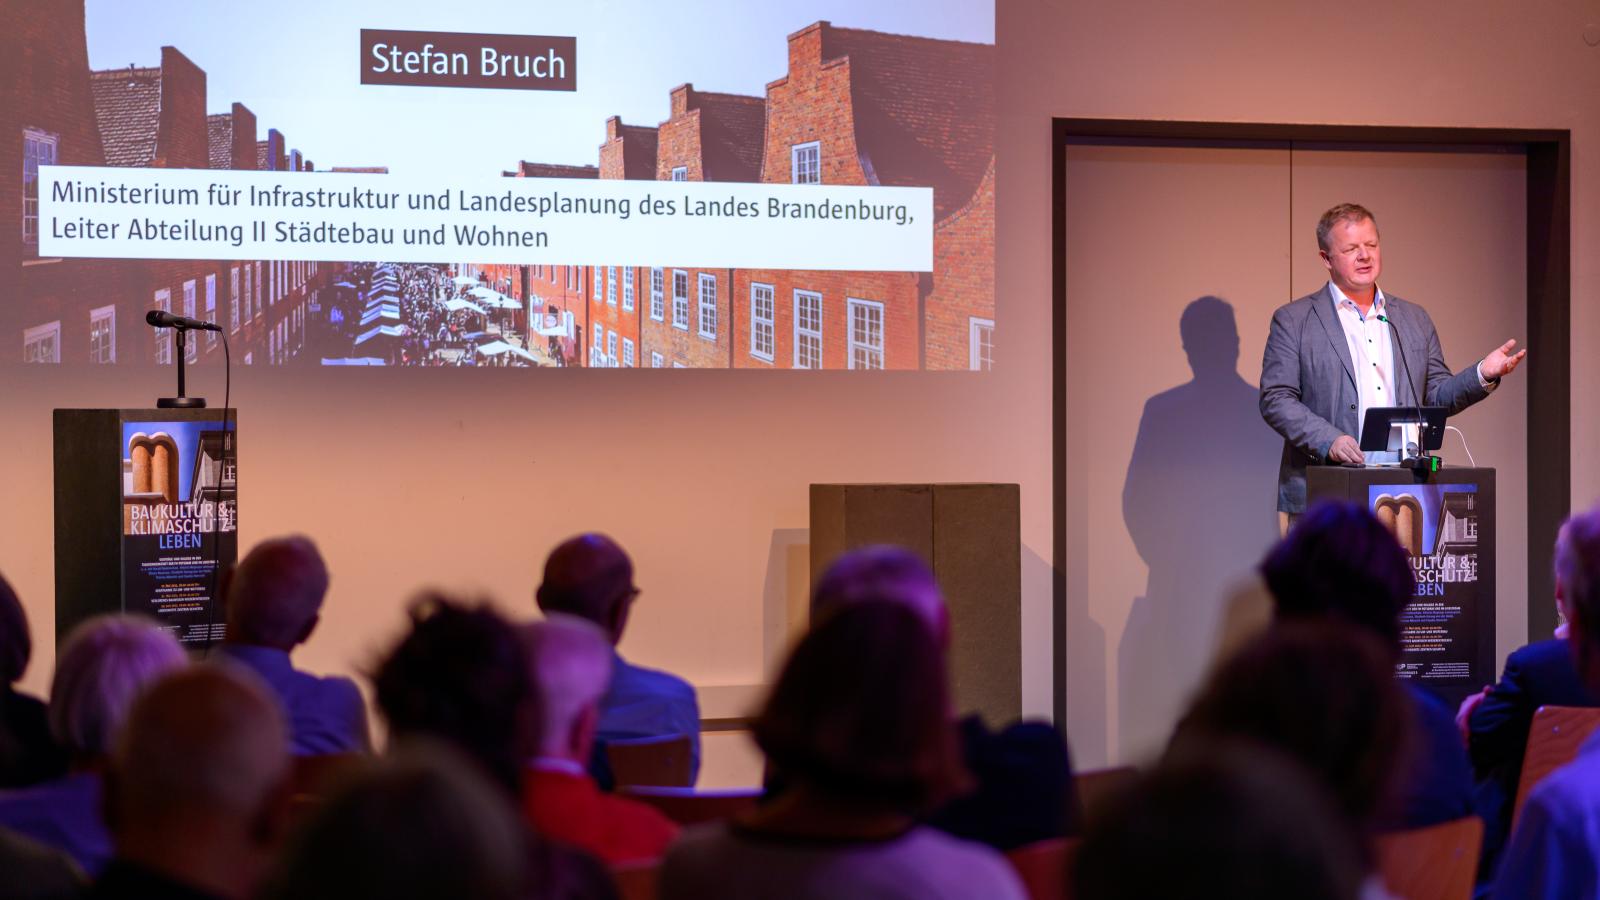 Stefan Bruch vom MIL hält die Eröffnungsrede der 3. Veranstaltung der Reihe Baukultur und Klimaschutz leben